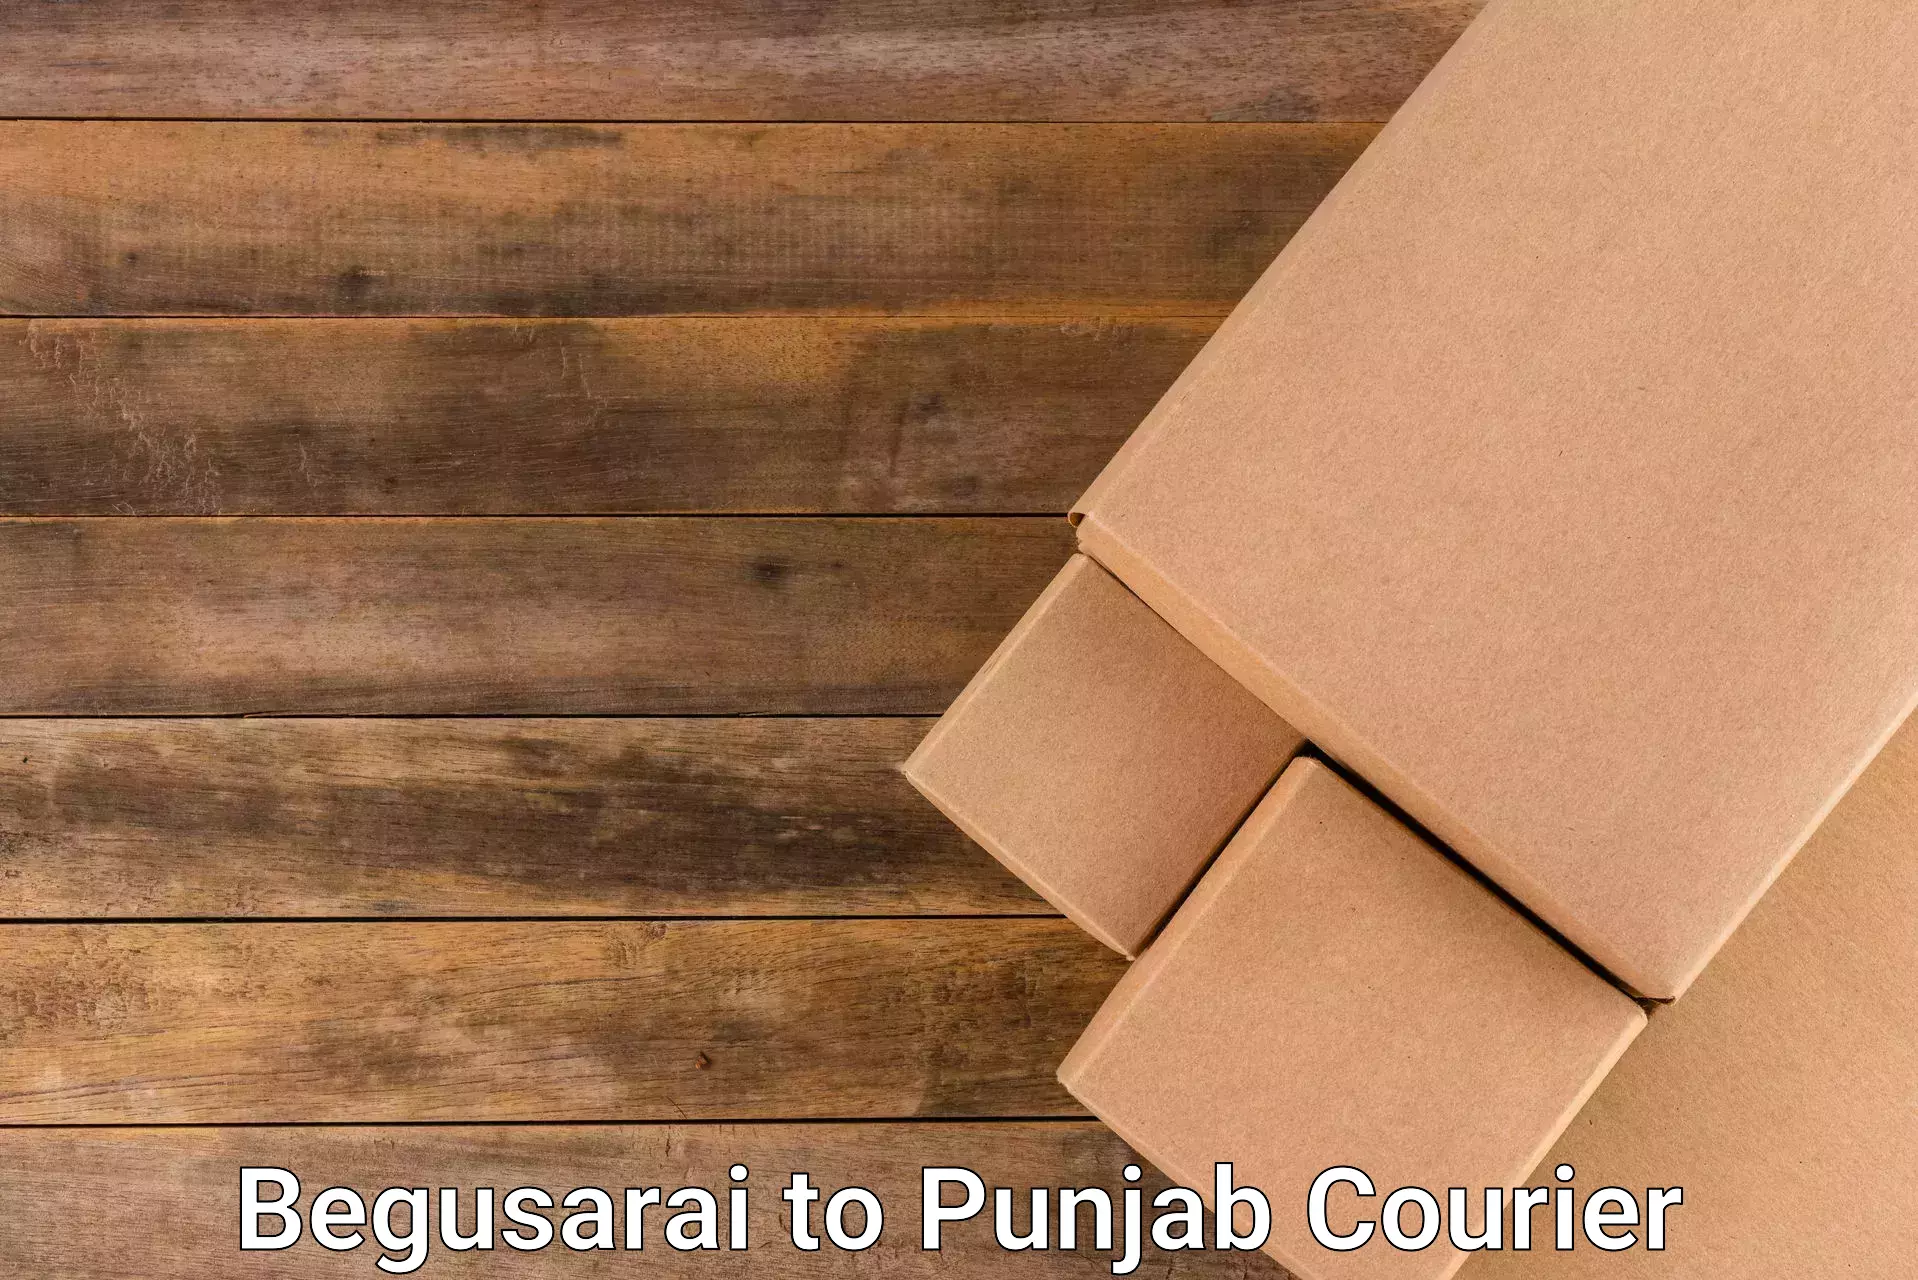 On-demand courier Begusarai to Kapurthala